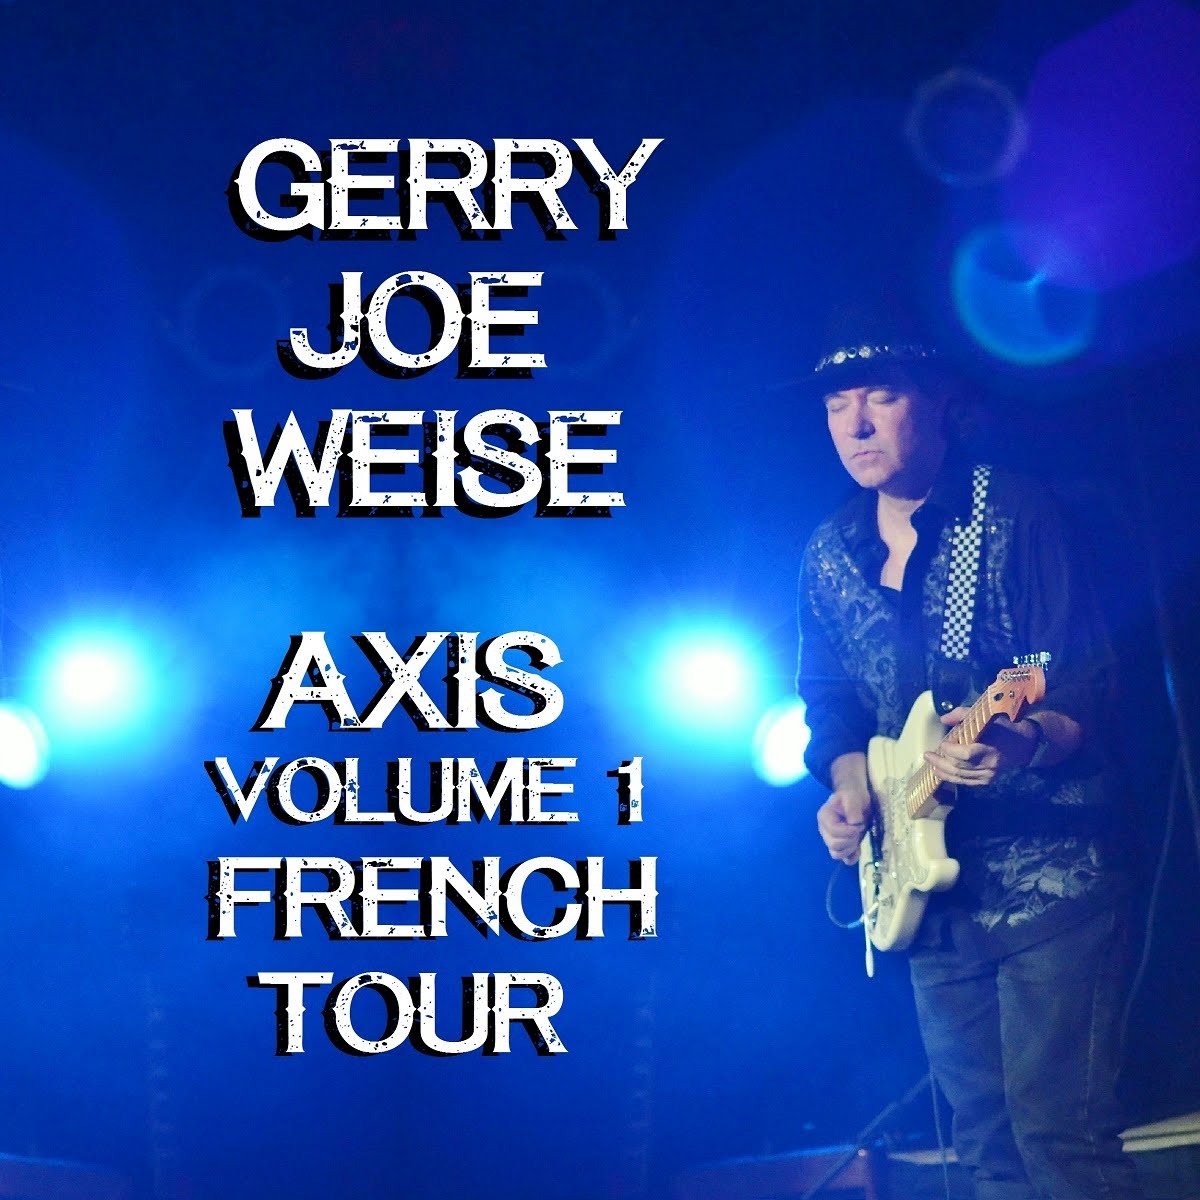 Axis Volume 1 French Tour, album 2019